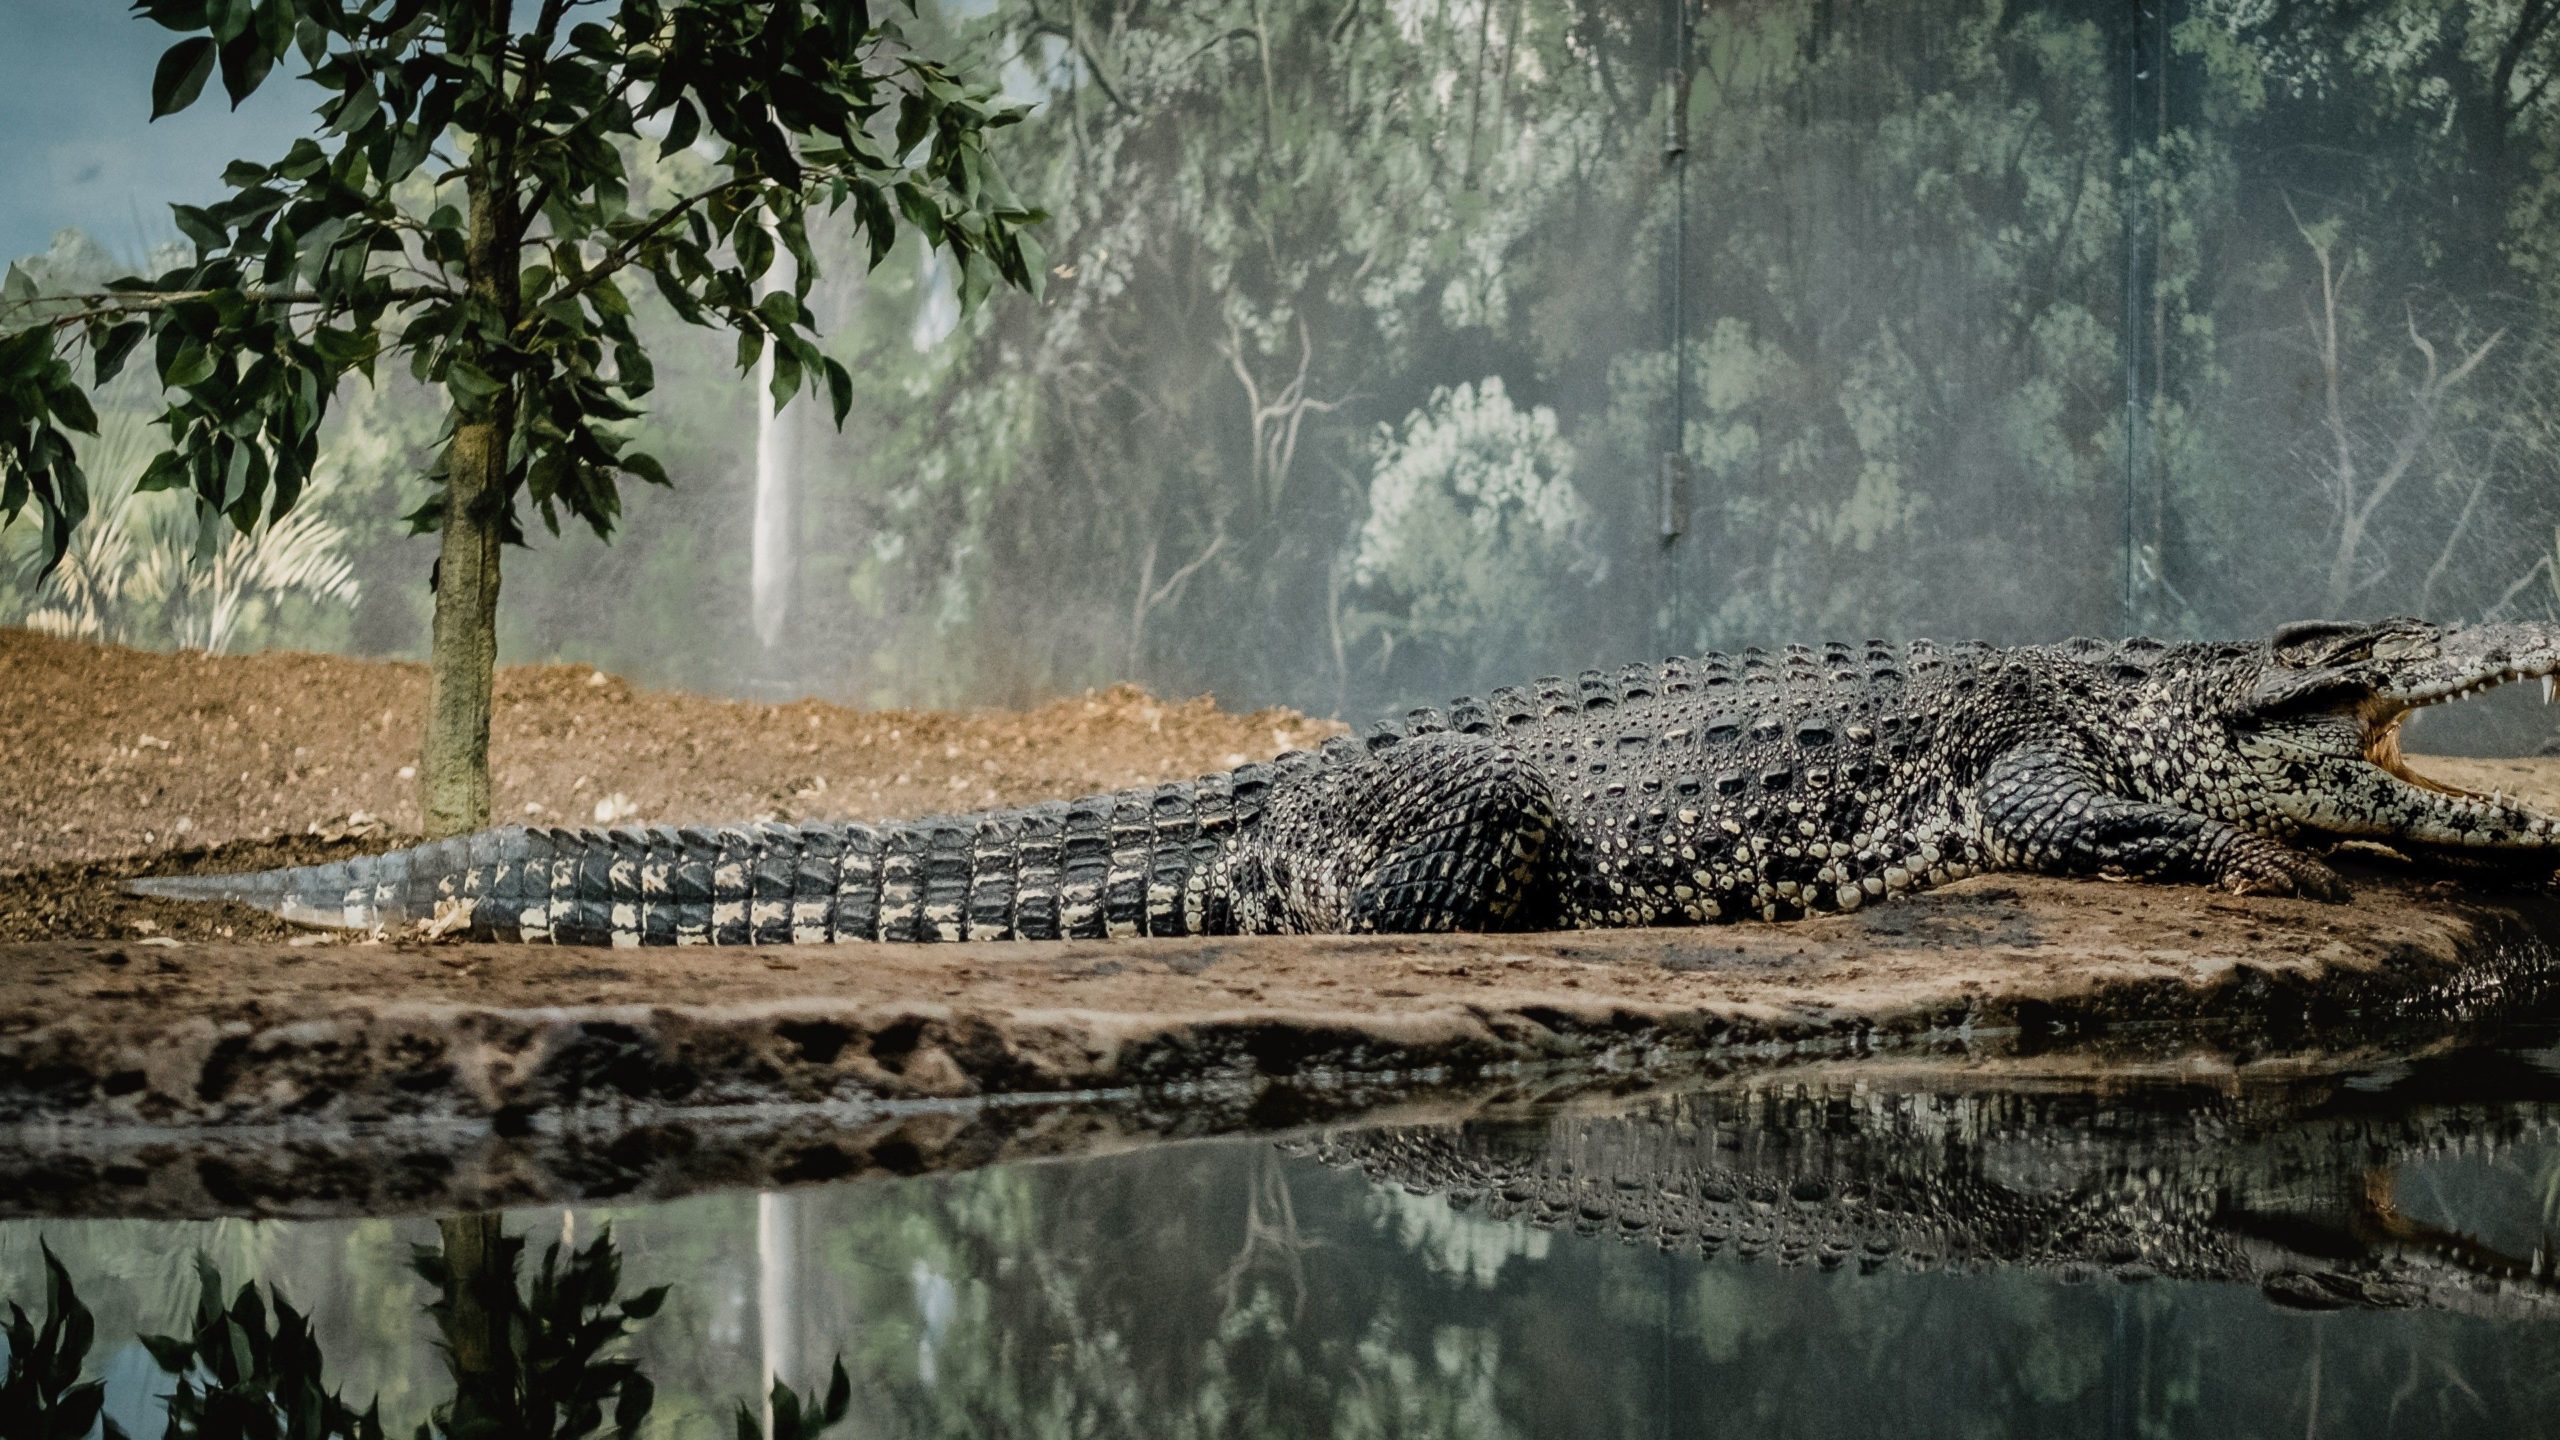 a picture of a crocodile